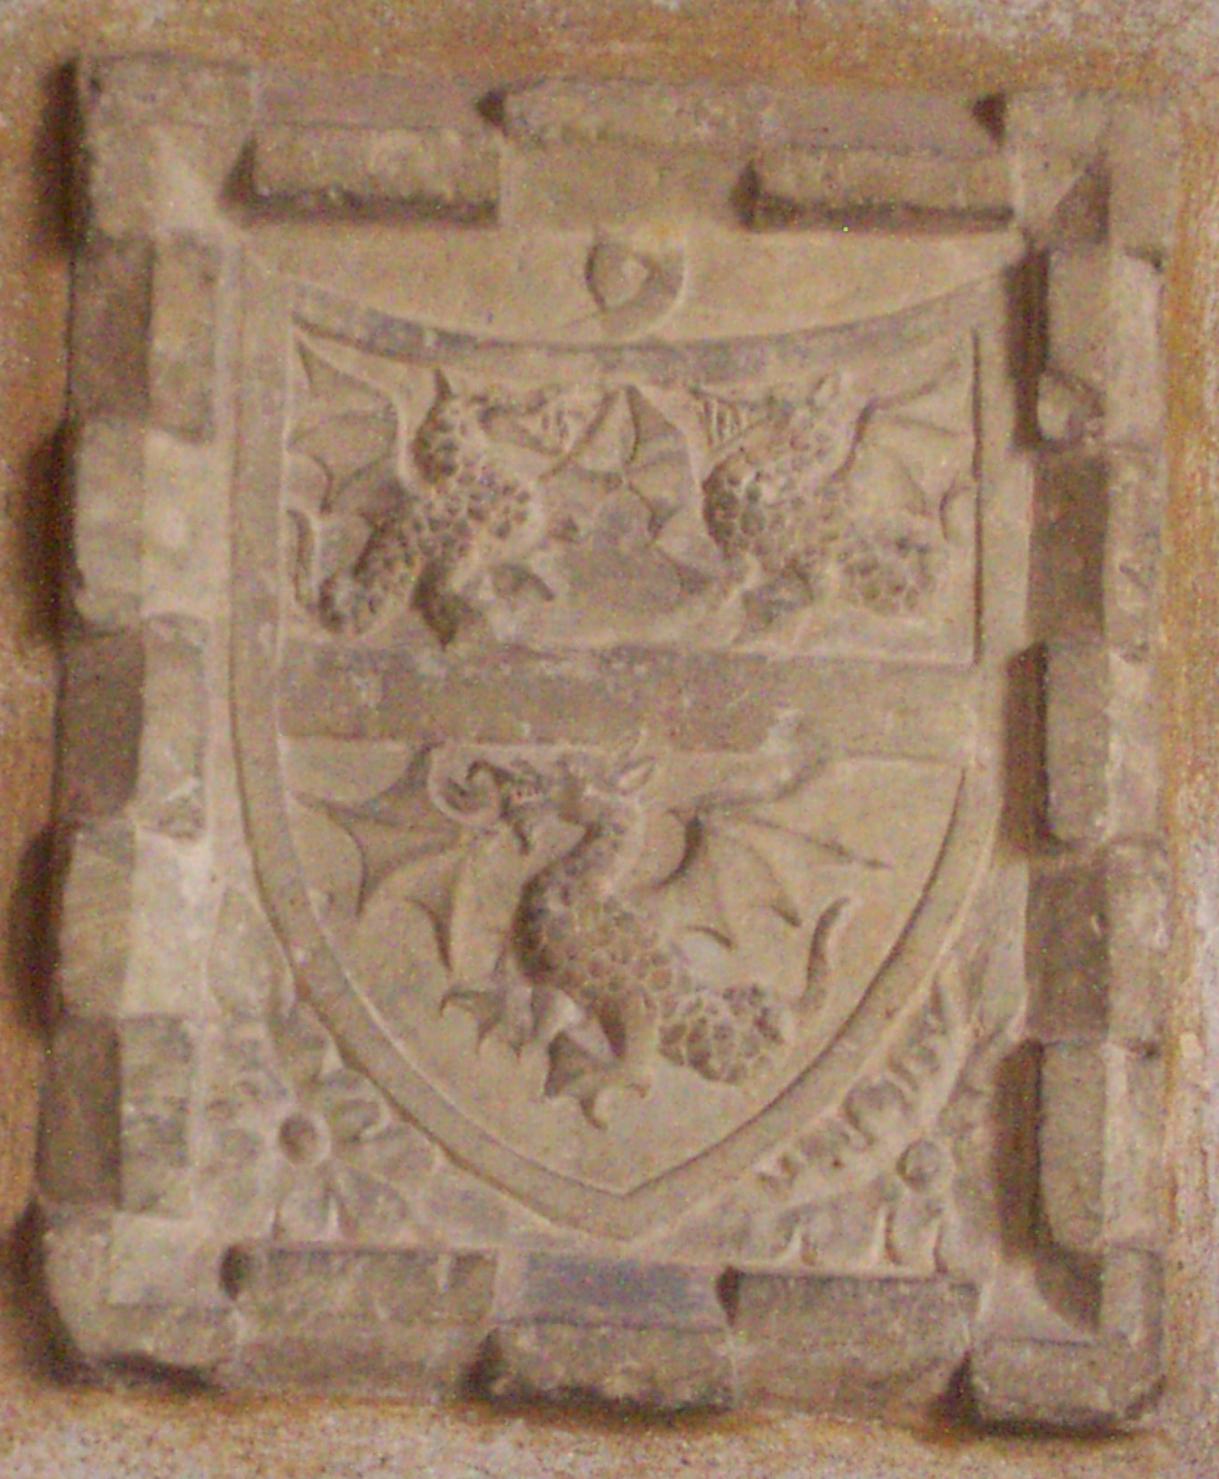 stemma gentilizio della famiglia Ramponi (rilievo) - ambito feltrino (secc. XV/ XVI)